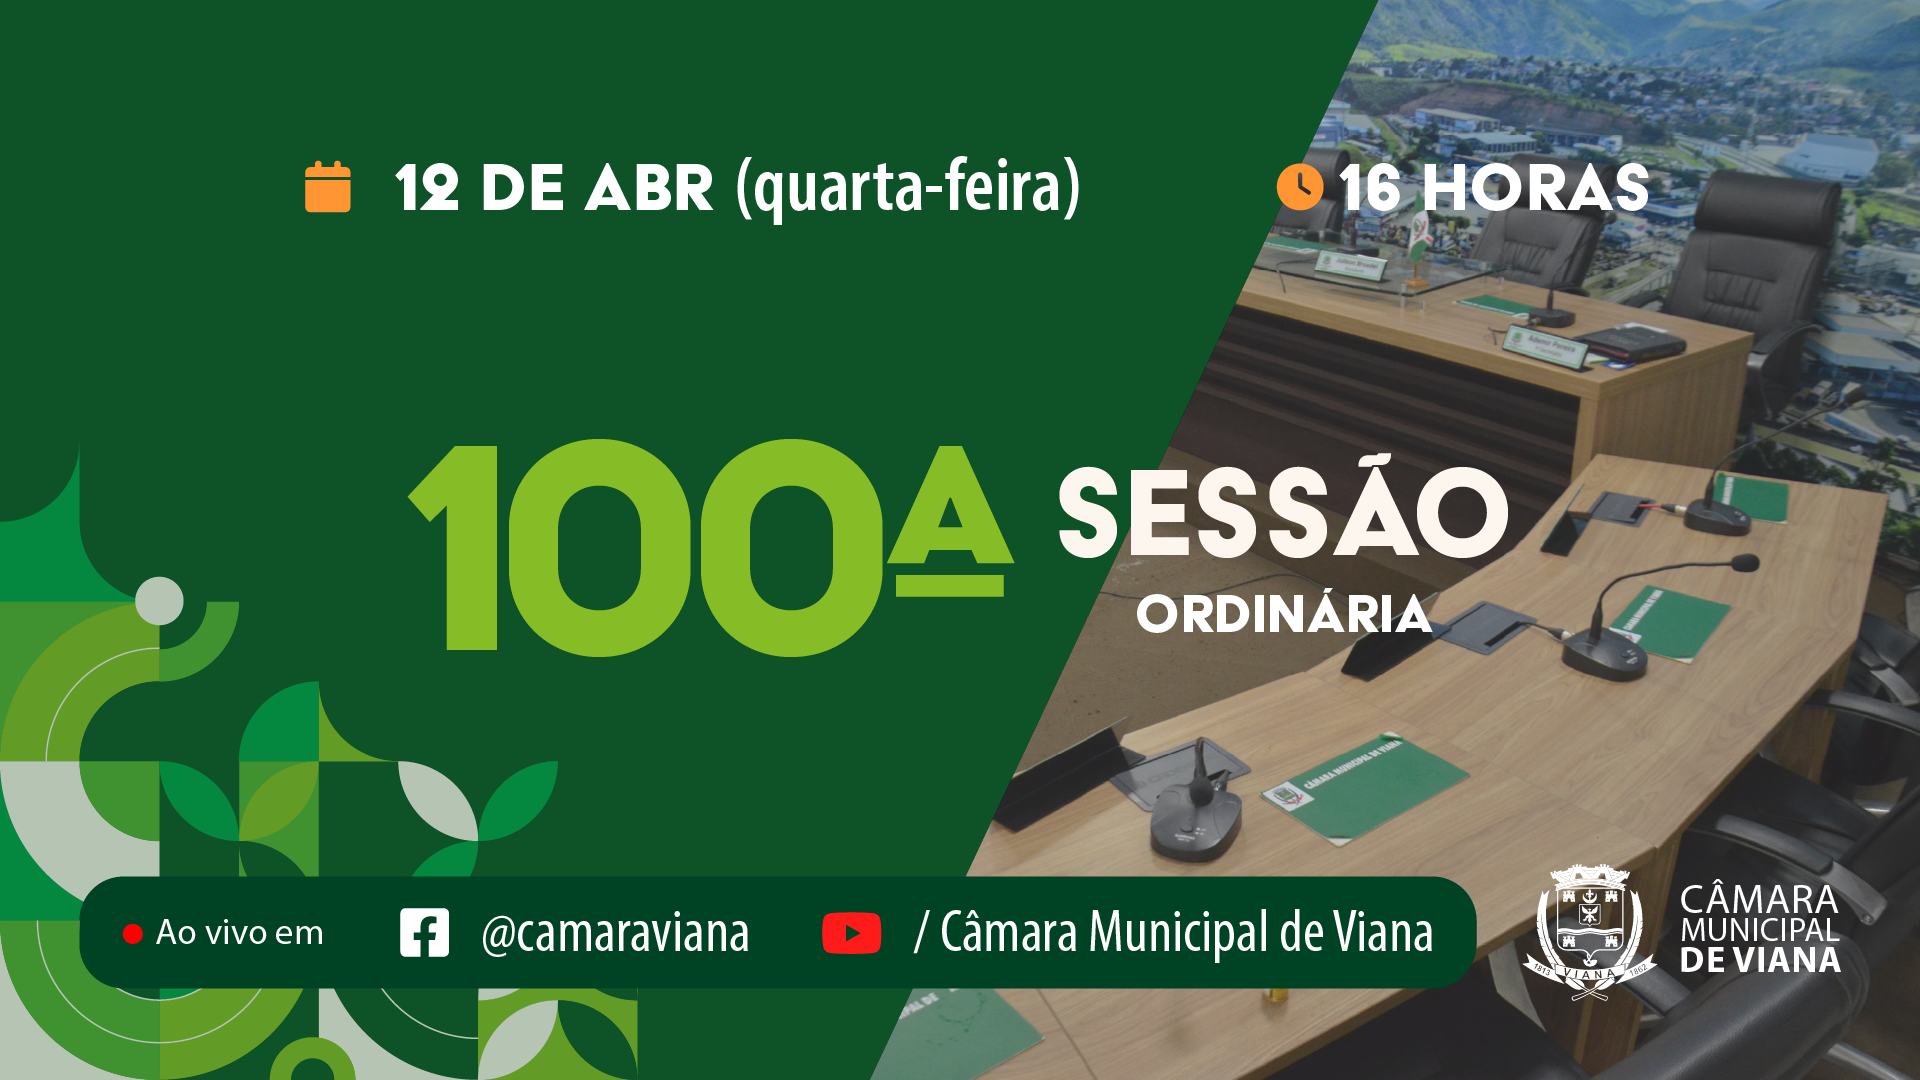 PAUTA DA CENTÉSIMA (100ª) SESSÃO ORDINÁRIA 